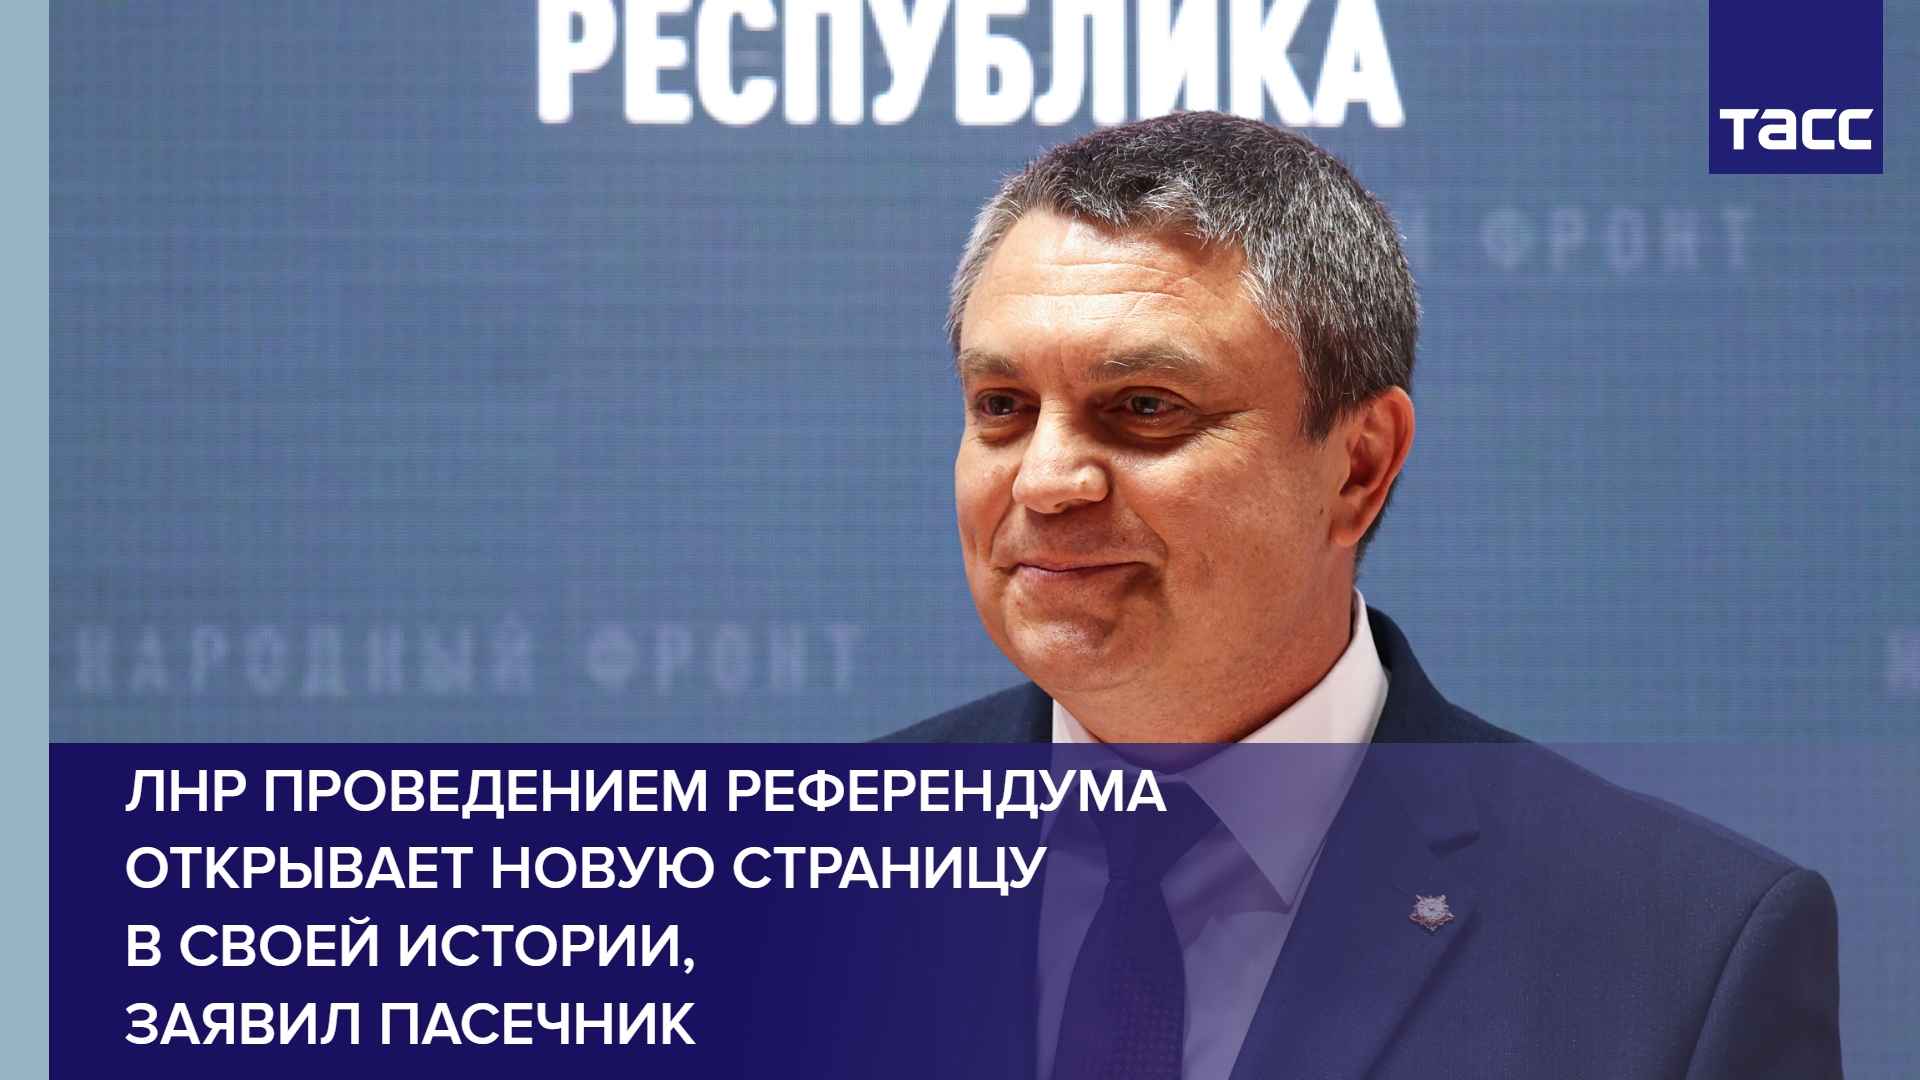 ЛНР проведением референдума открывает новую страницу в своей истории, заявил Пасечник